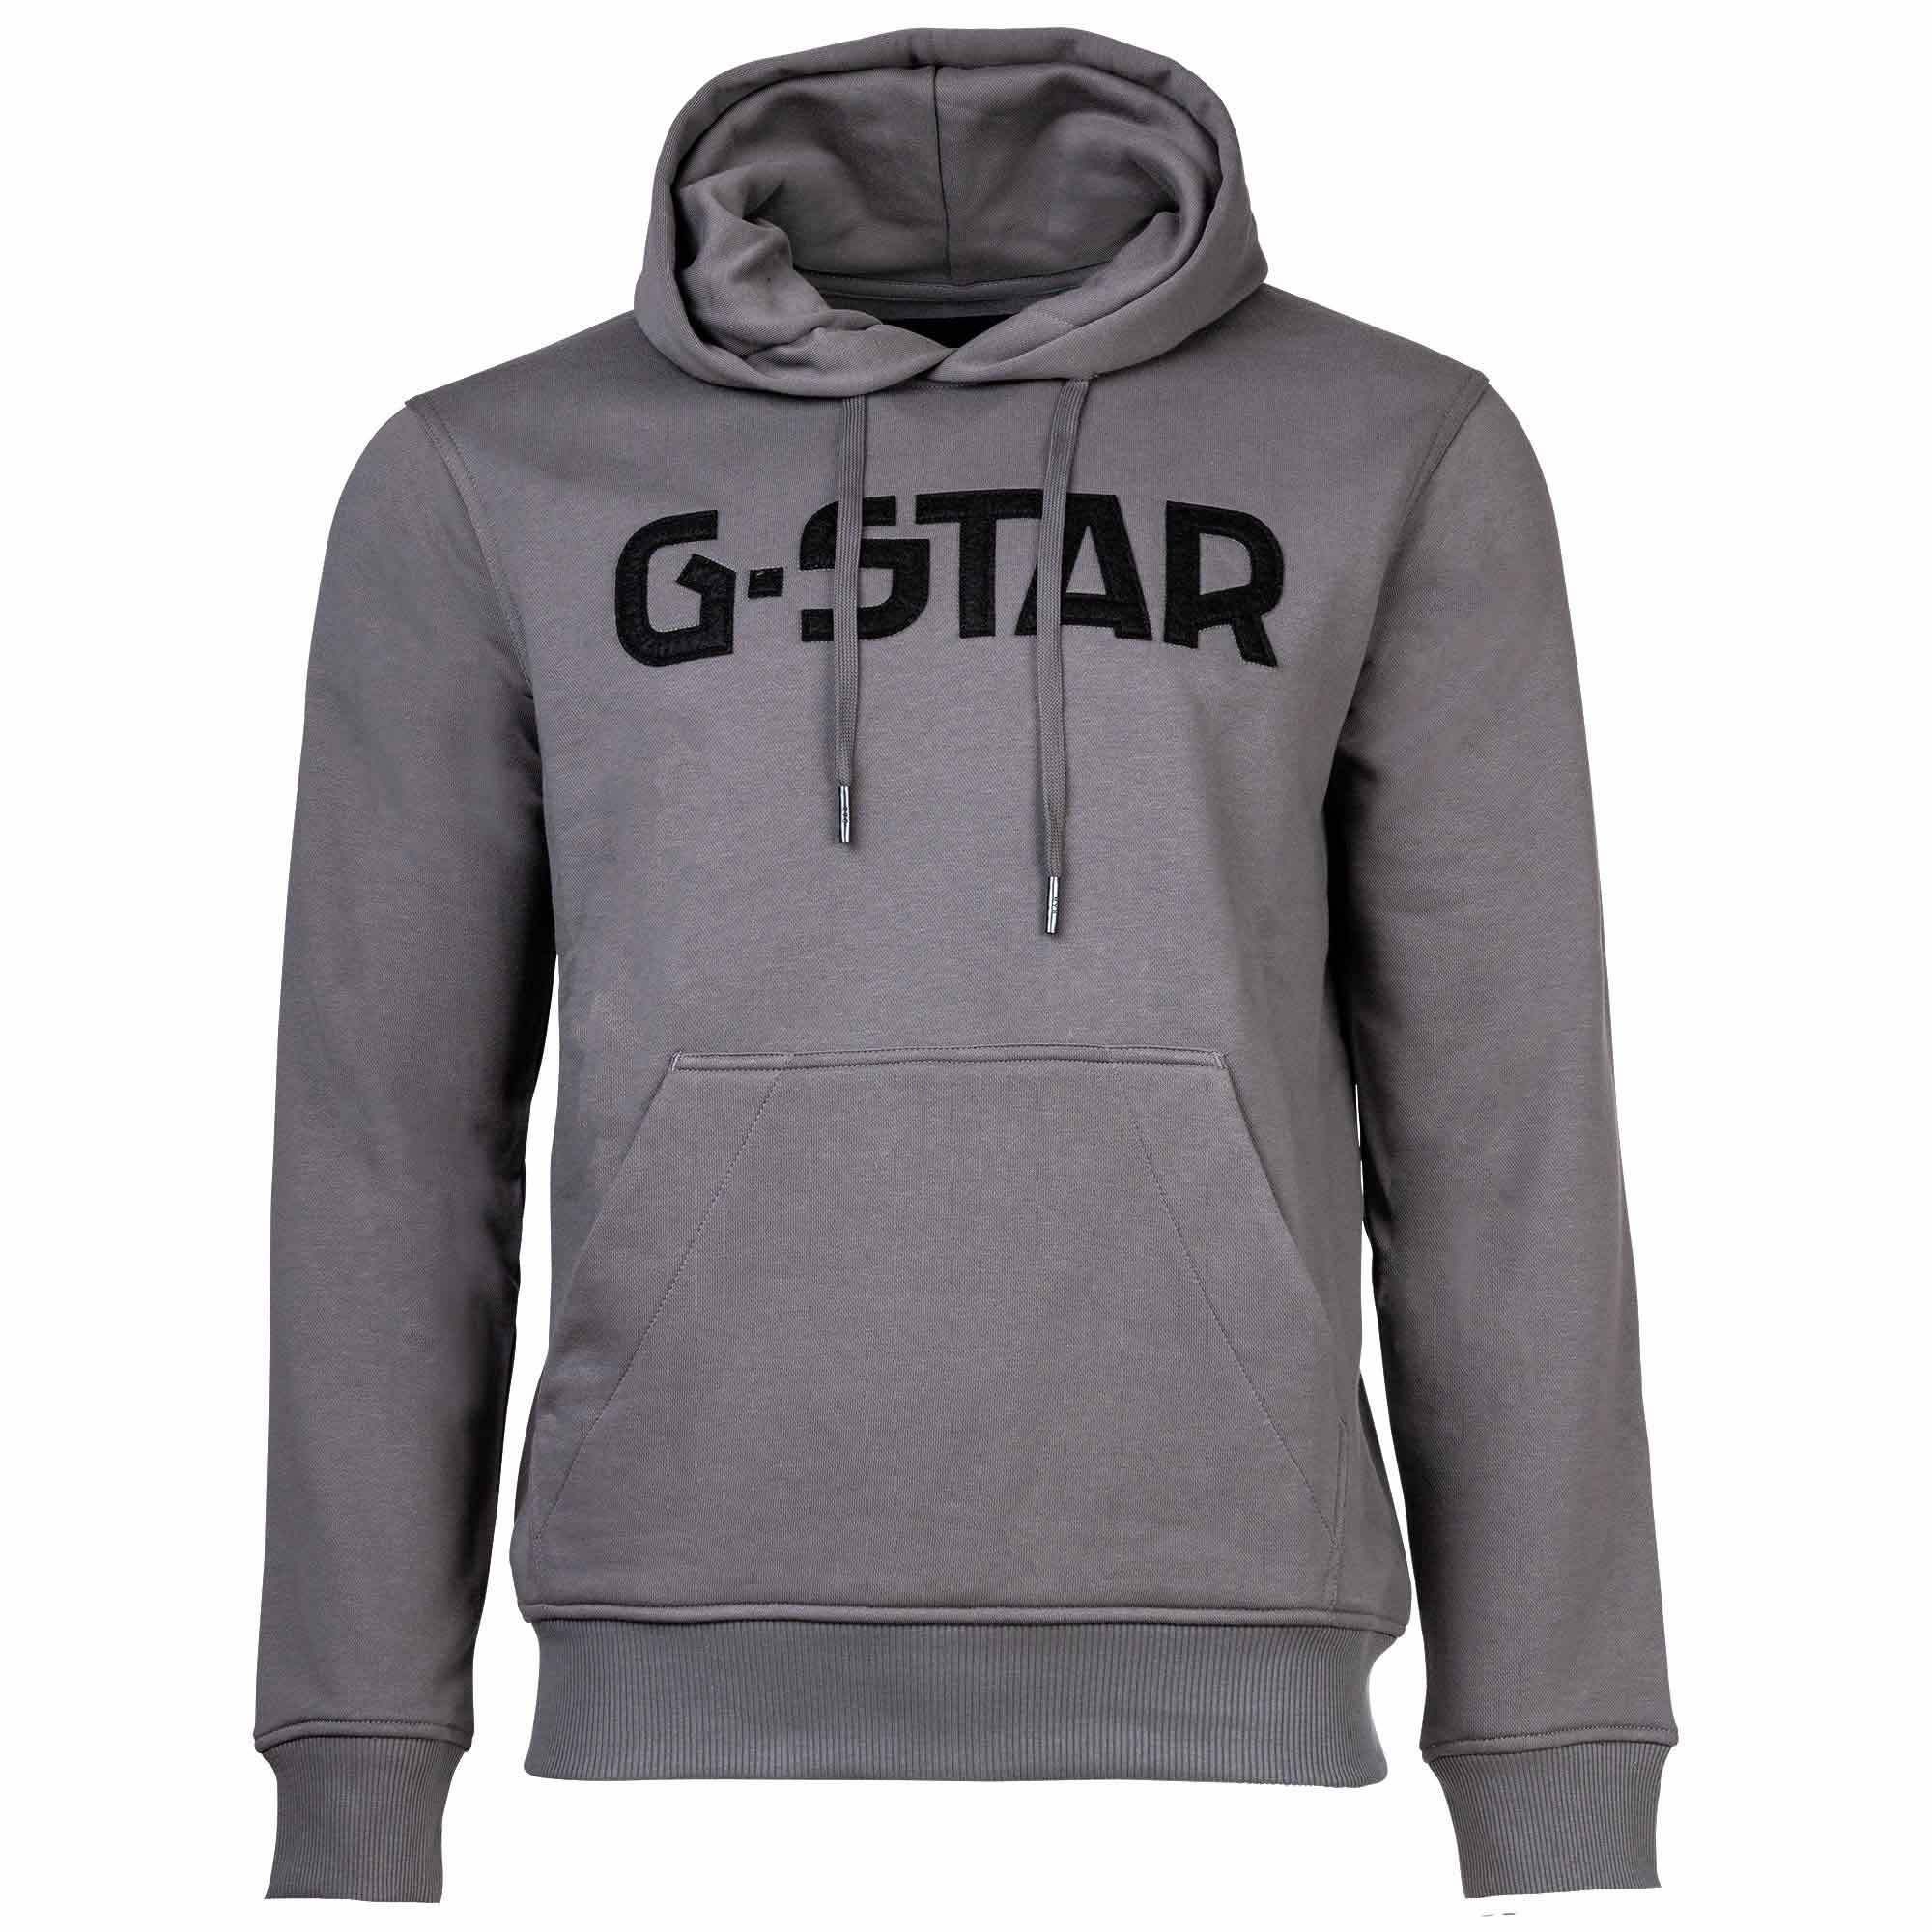 G-Star RAW Sweatshirt Herren Hoodie - G-Star hdd, Sweater, Pullover